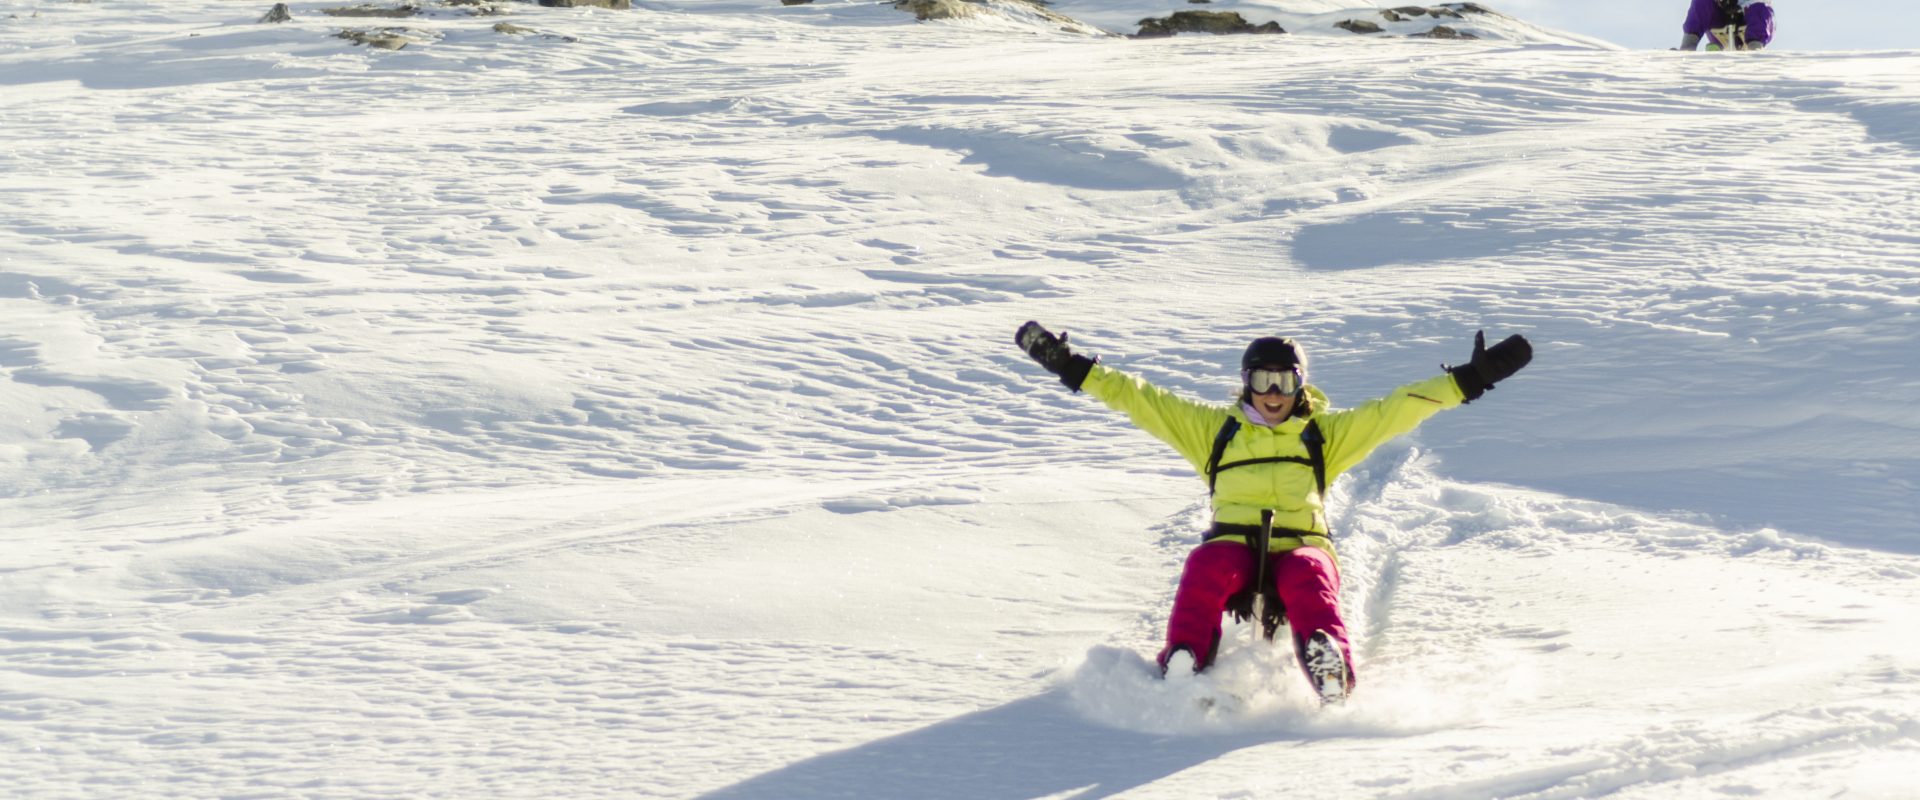 Le Snooc parmi les activités insolites en montagne pour vos vacances d'hiver